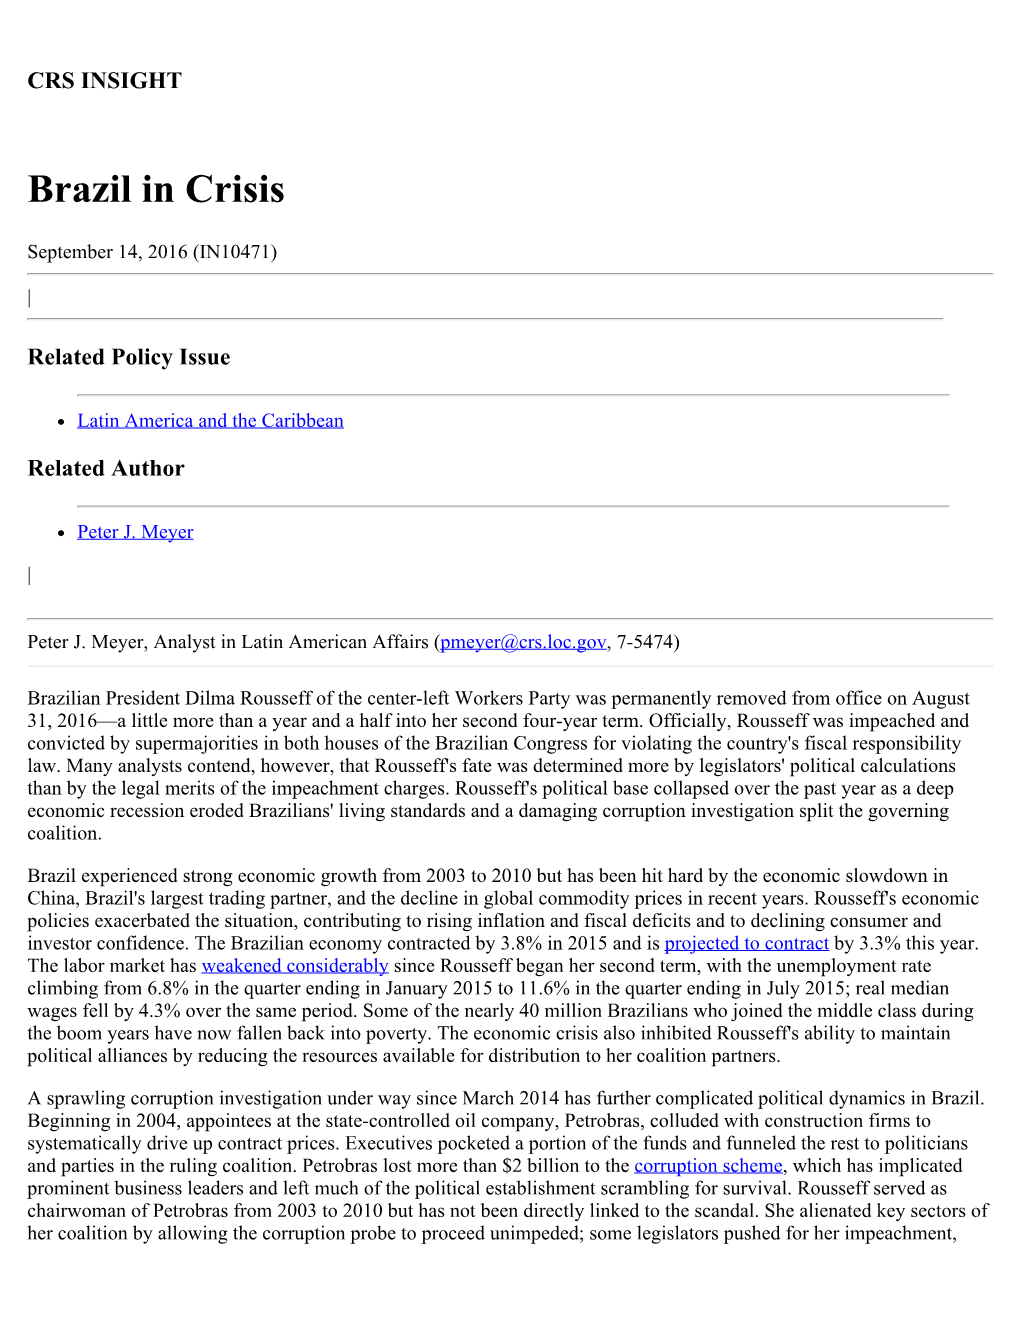 Brazil in Crisis